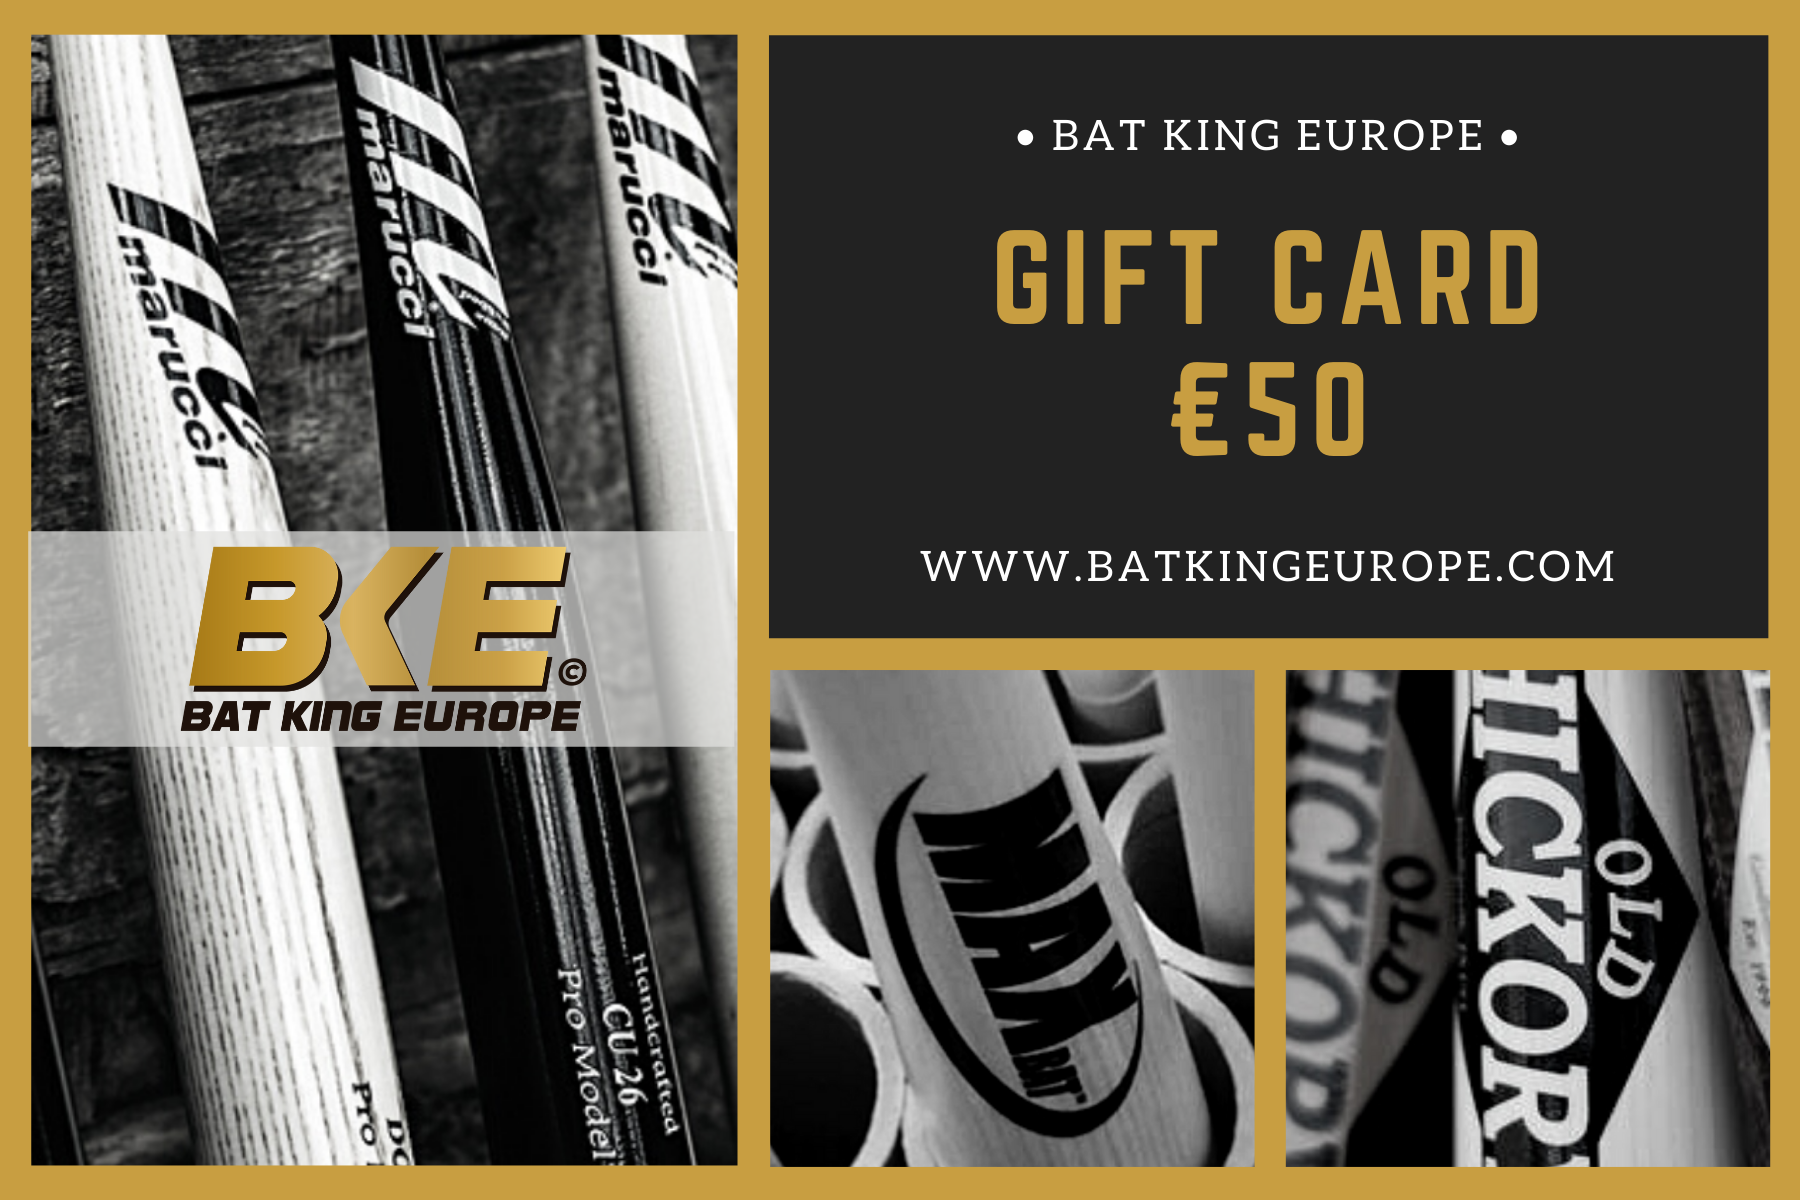 Bat King Europe Gift card